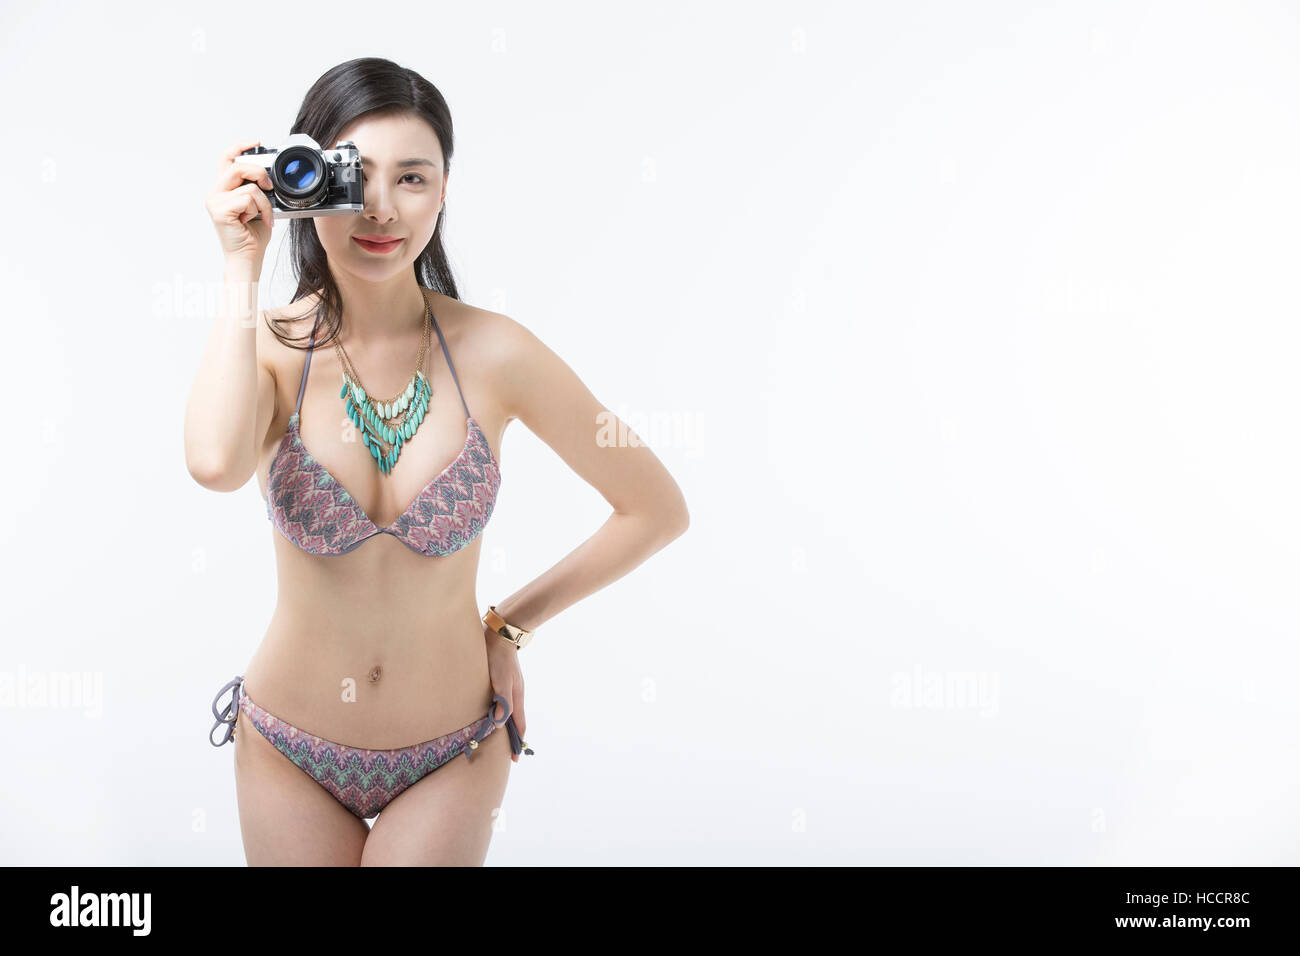 Young slim woman in bikini posing with camera Stock Photo